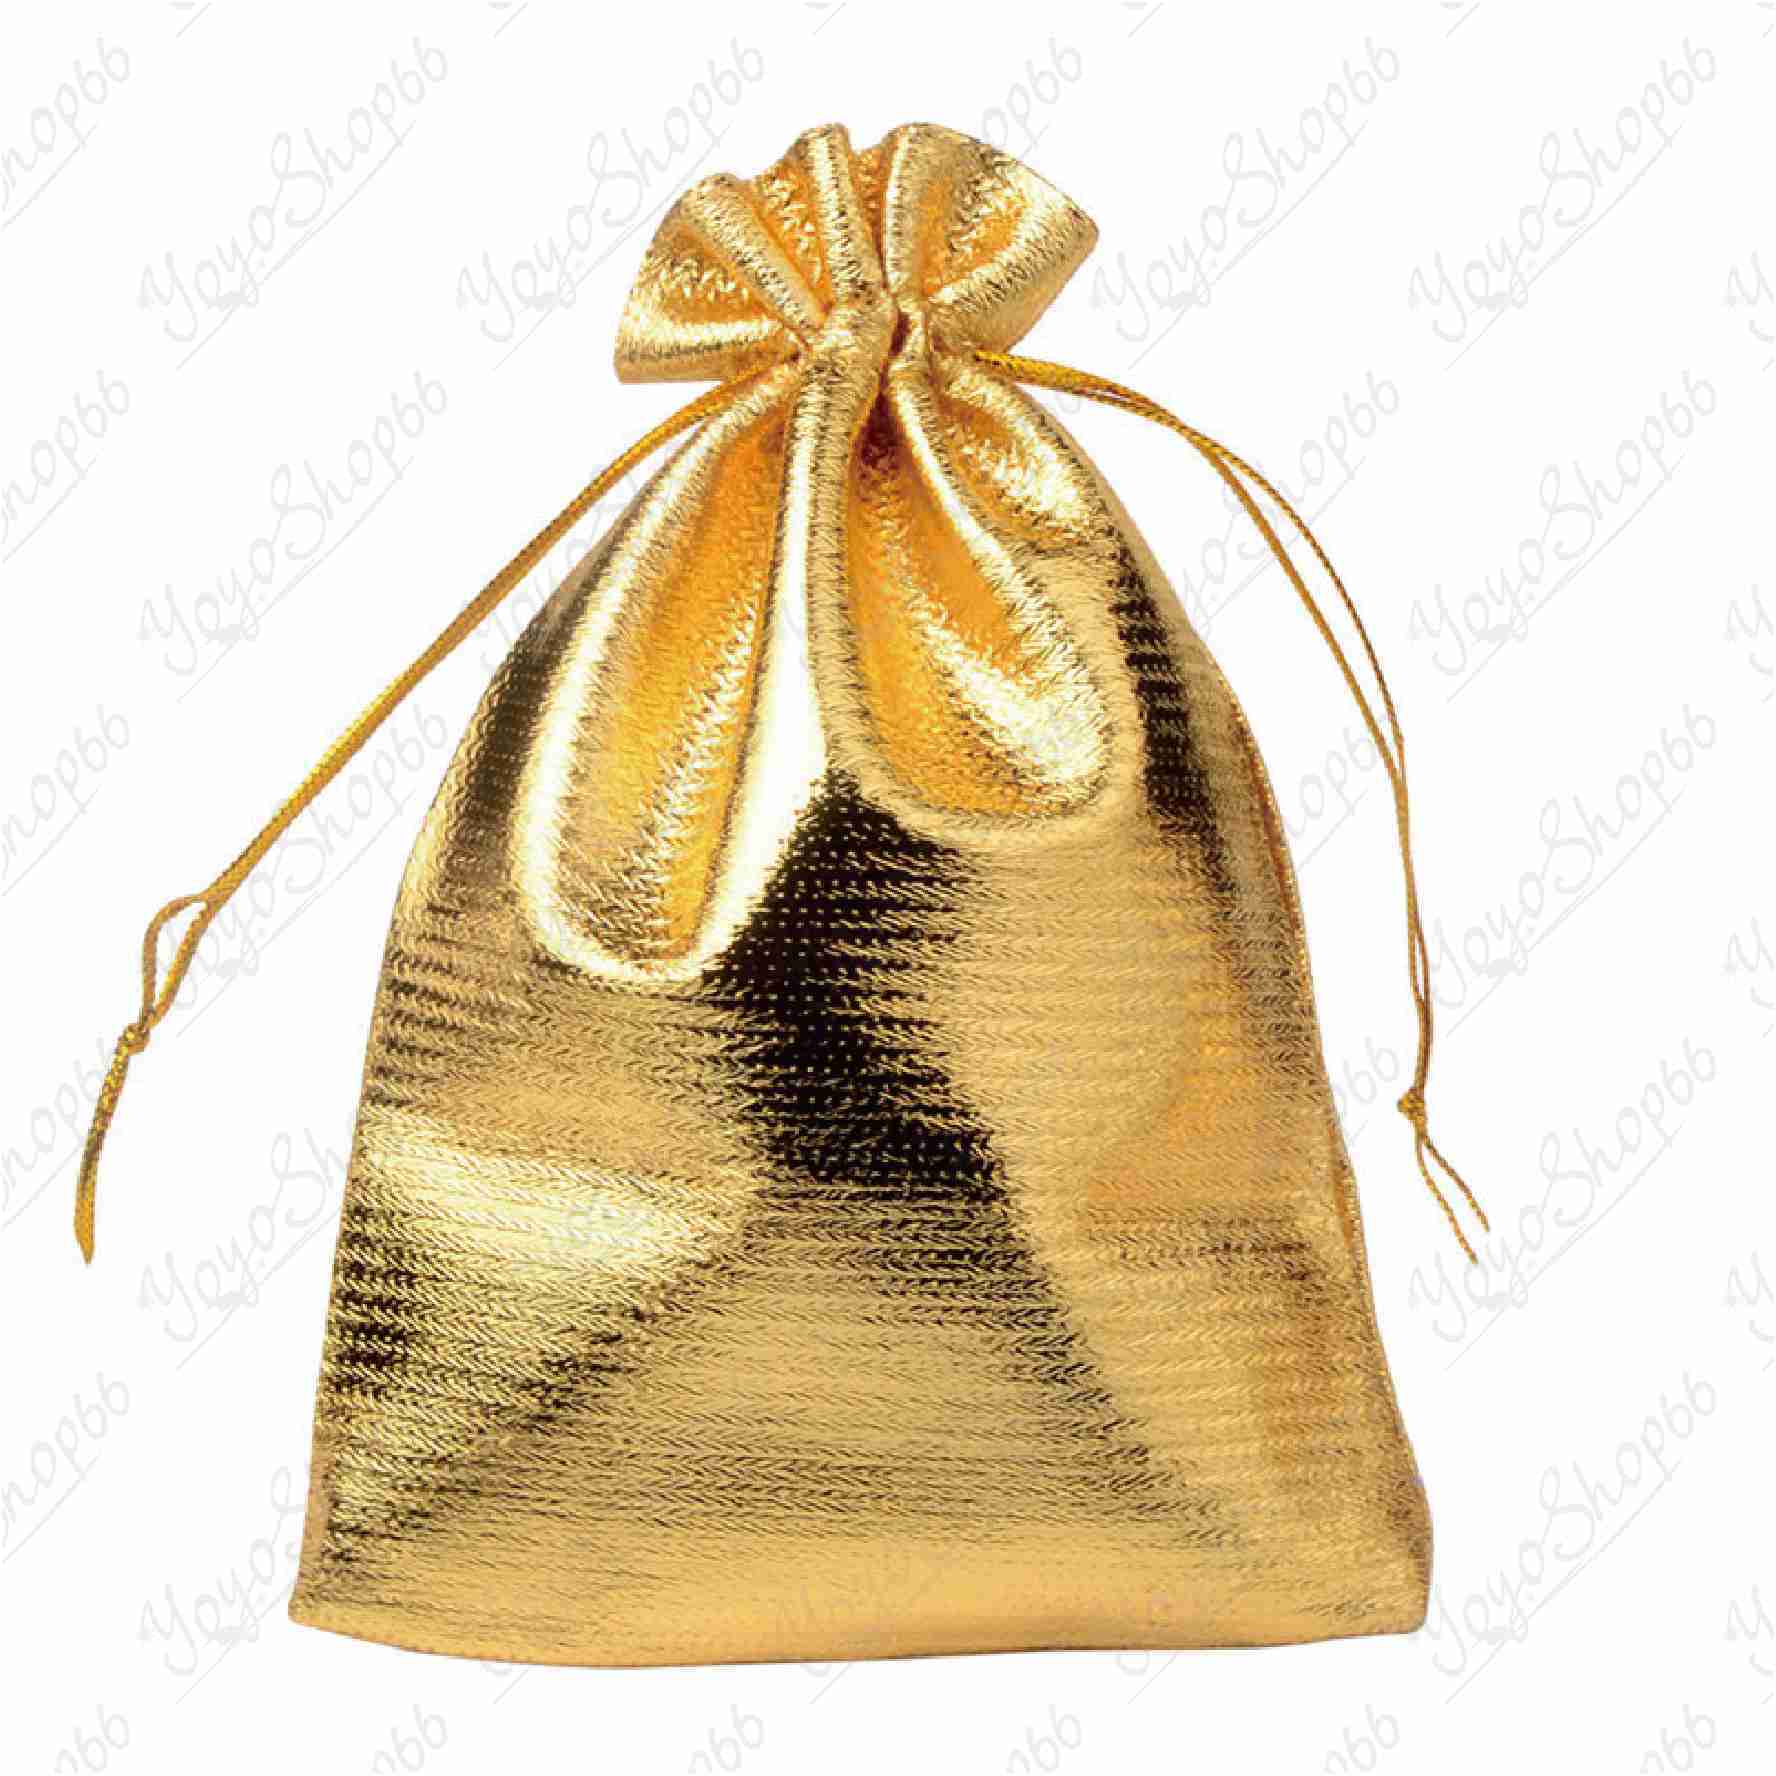 #631【修剪袋內毛邊】首飾包裝袋(1入) 金銀布袋 束口抽繩袋 高檔首飾袋 金袋 禮品袋【愛尚生活】